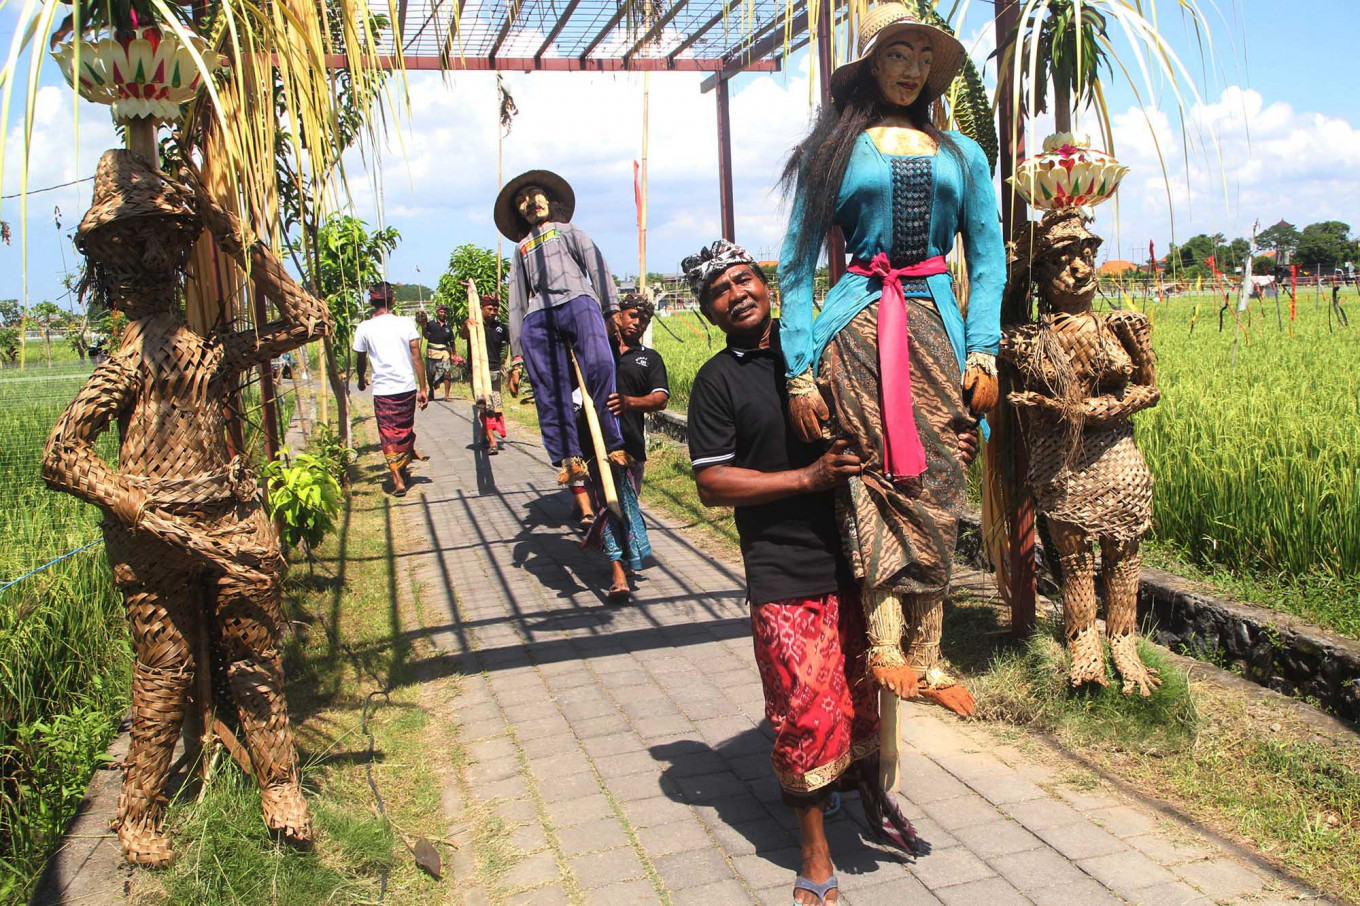 Foto Modisnya Orang-orangan Sawah di Bali | Good News ...